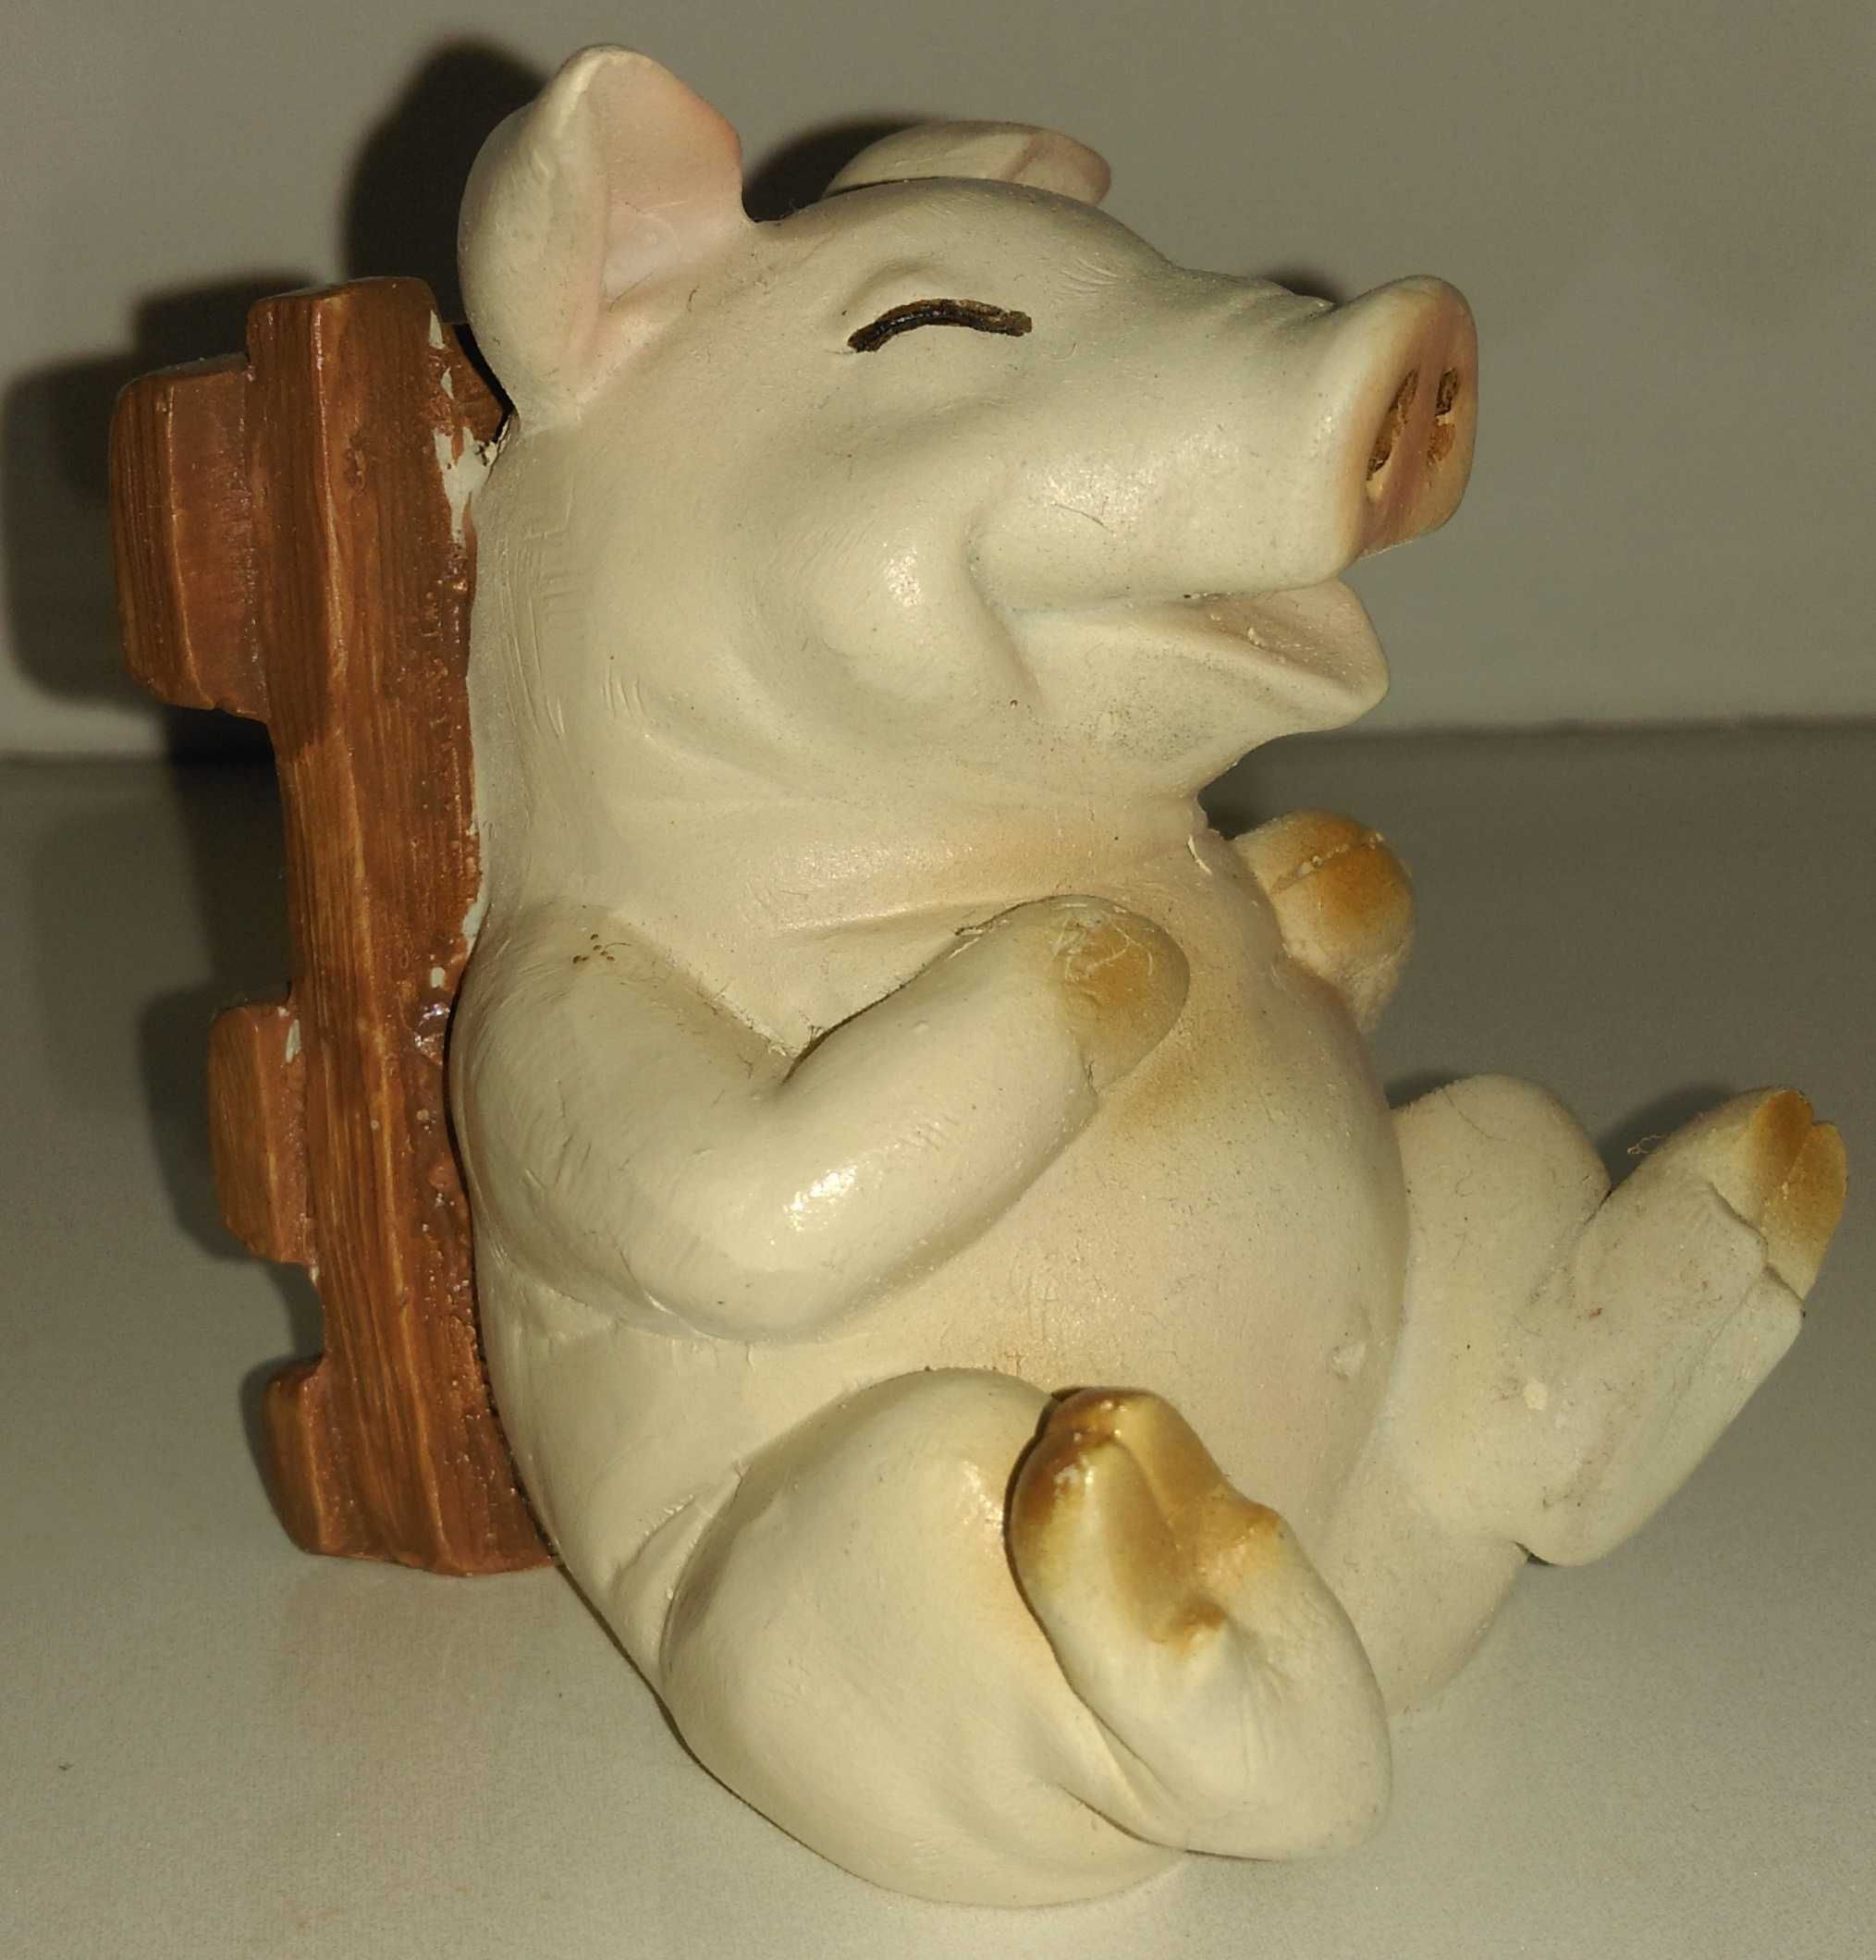 Забавная детская игрушка улыбчатый поросенок свинка.Сувенир из Madeira